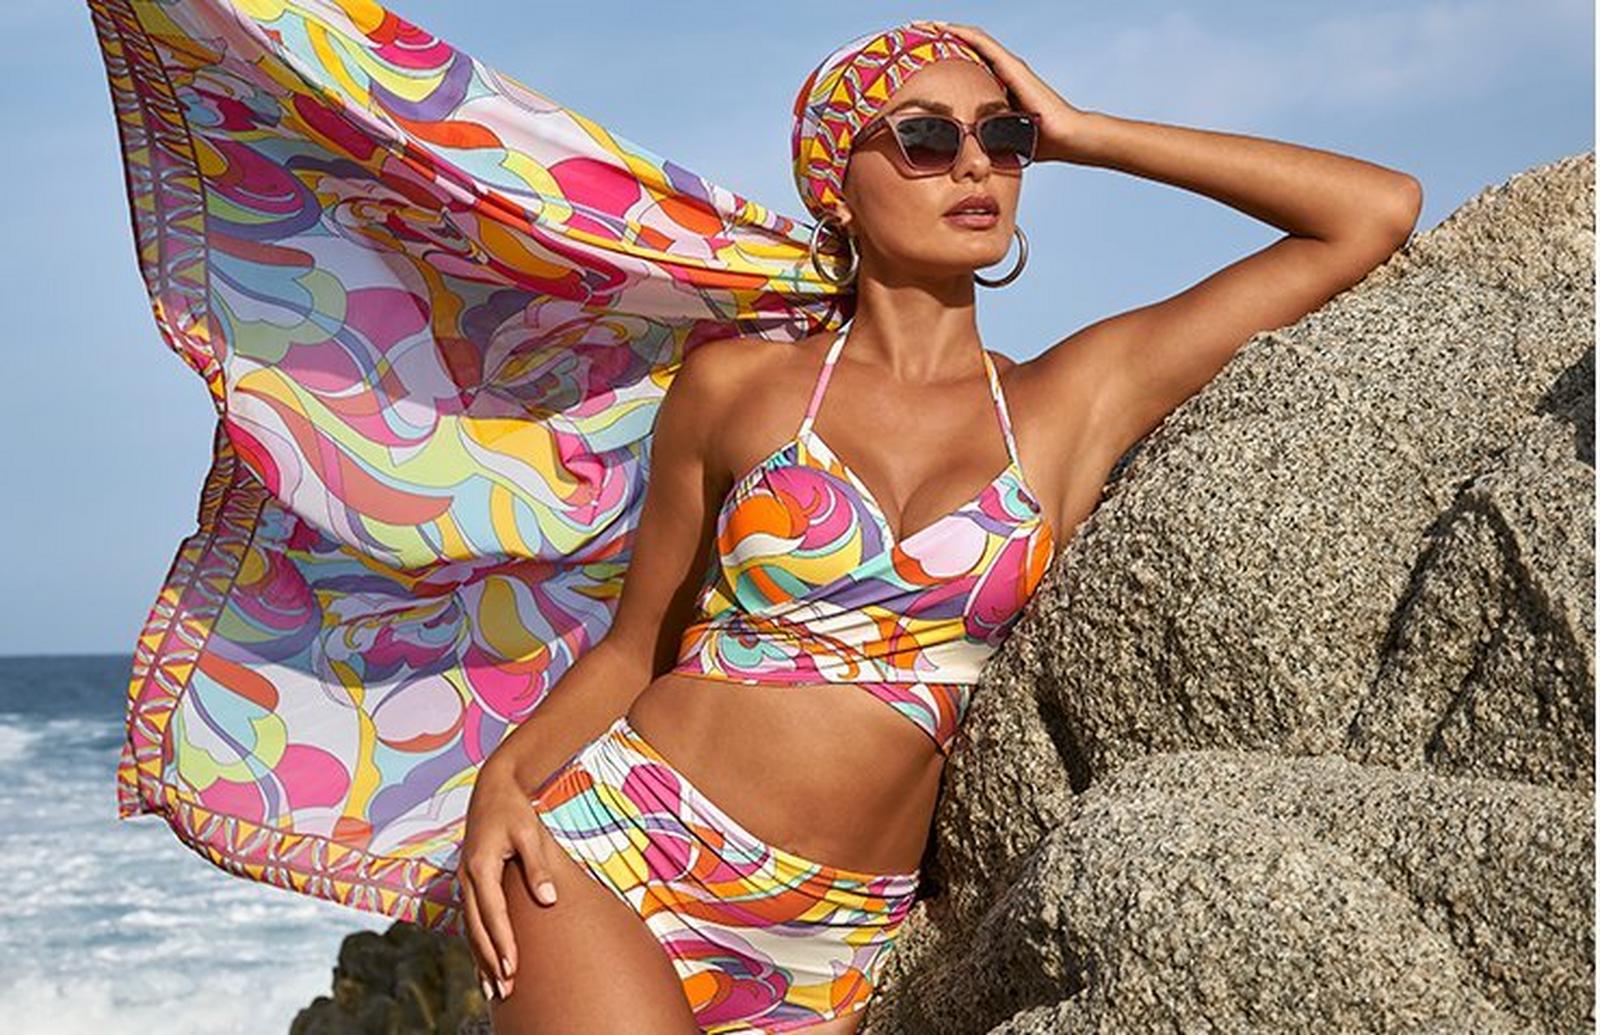 model wearing a sunset print bikini, matching headwrap, and sunglasses.